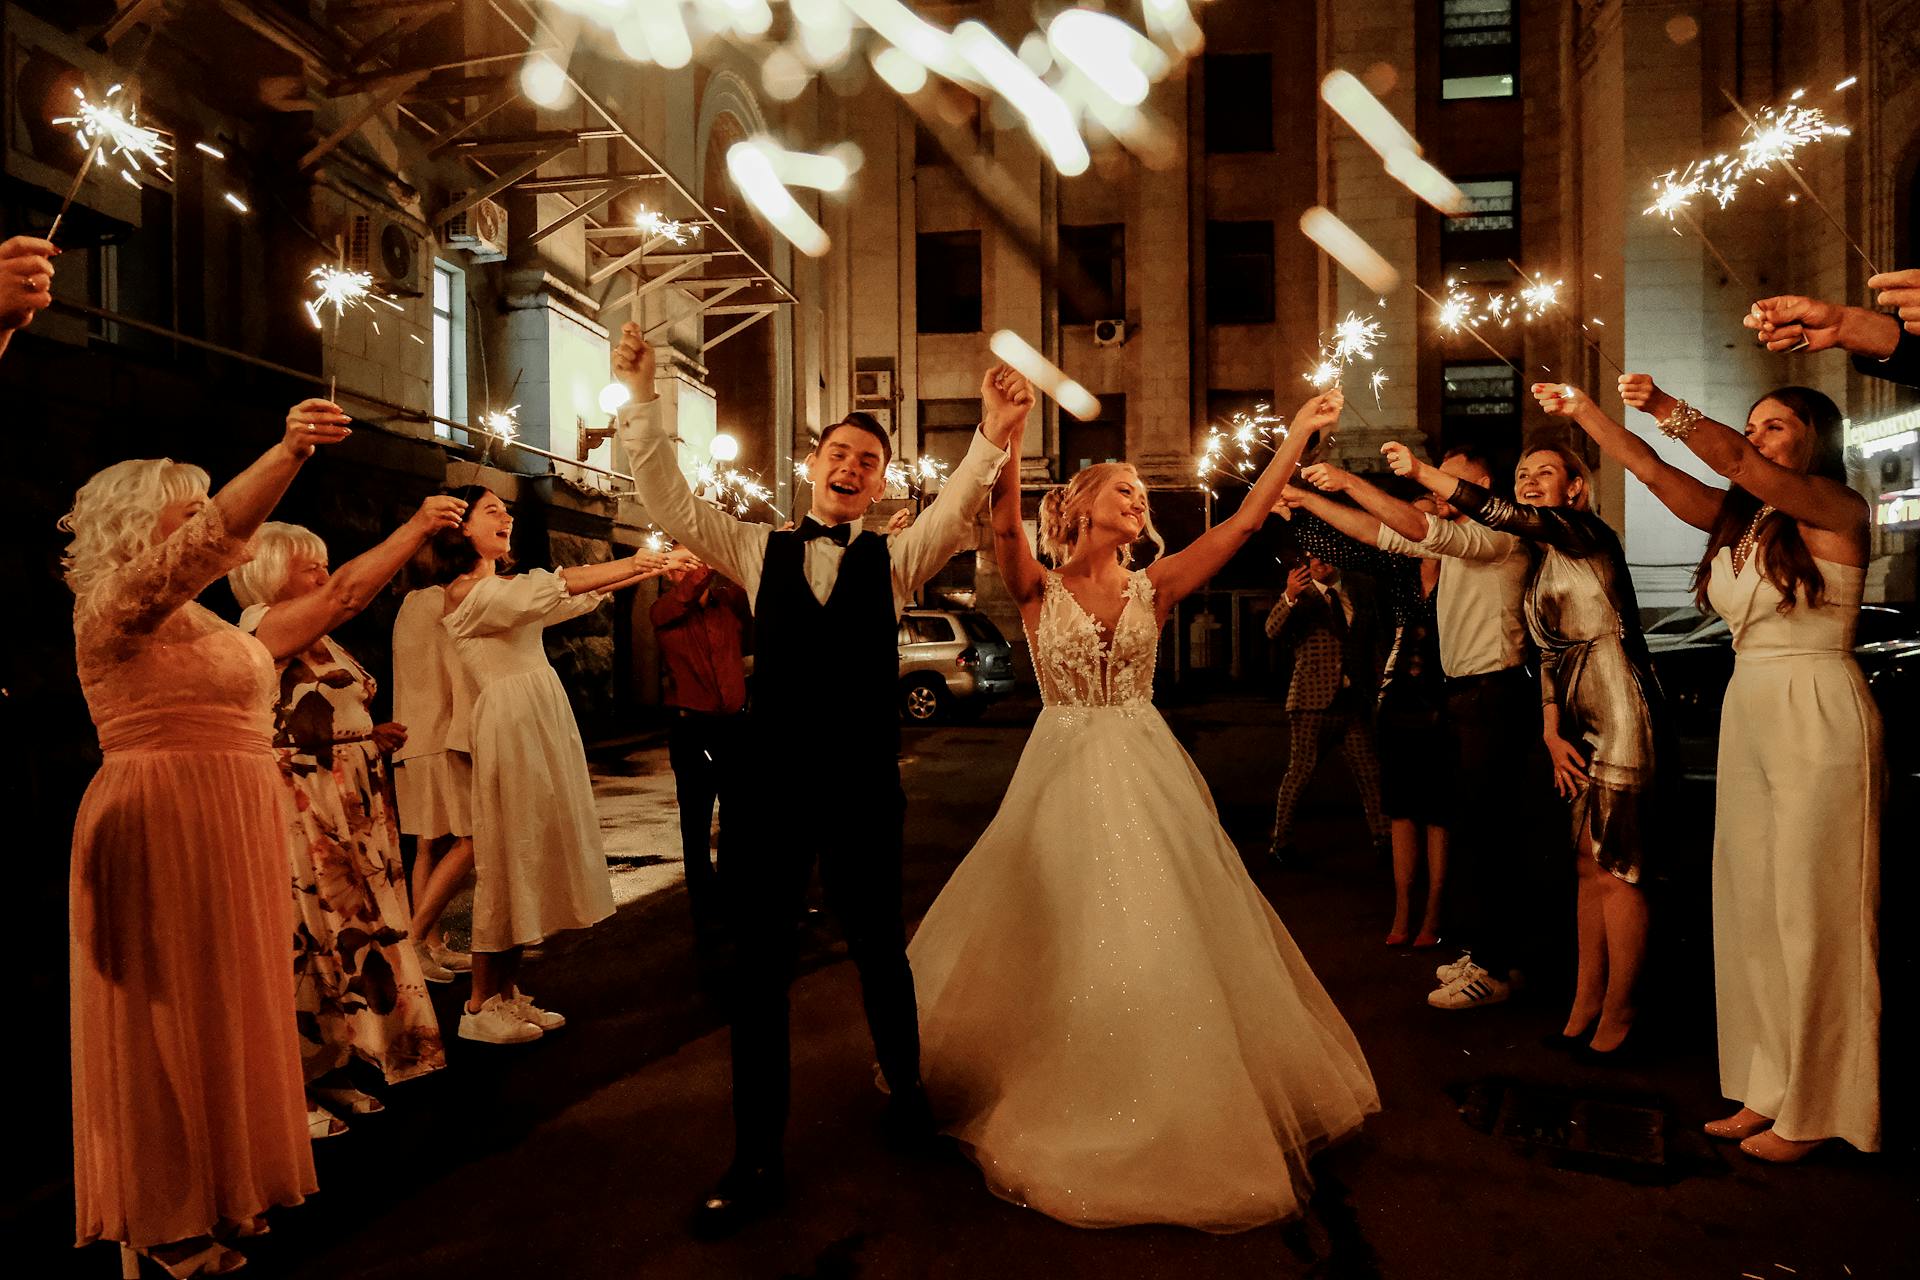 Ein glückliches Paar, das seine Hochzeit mit Freunden und Familie feiert | Quelle: Pexels